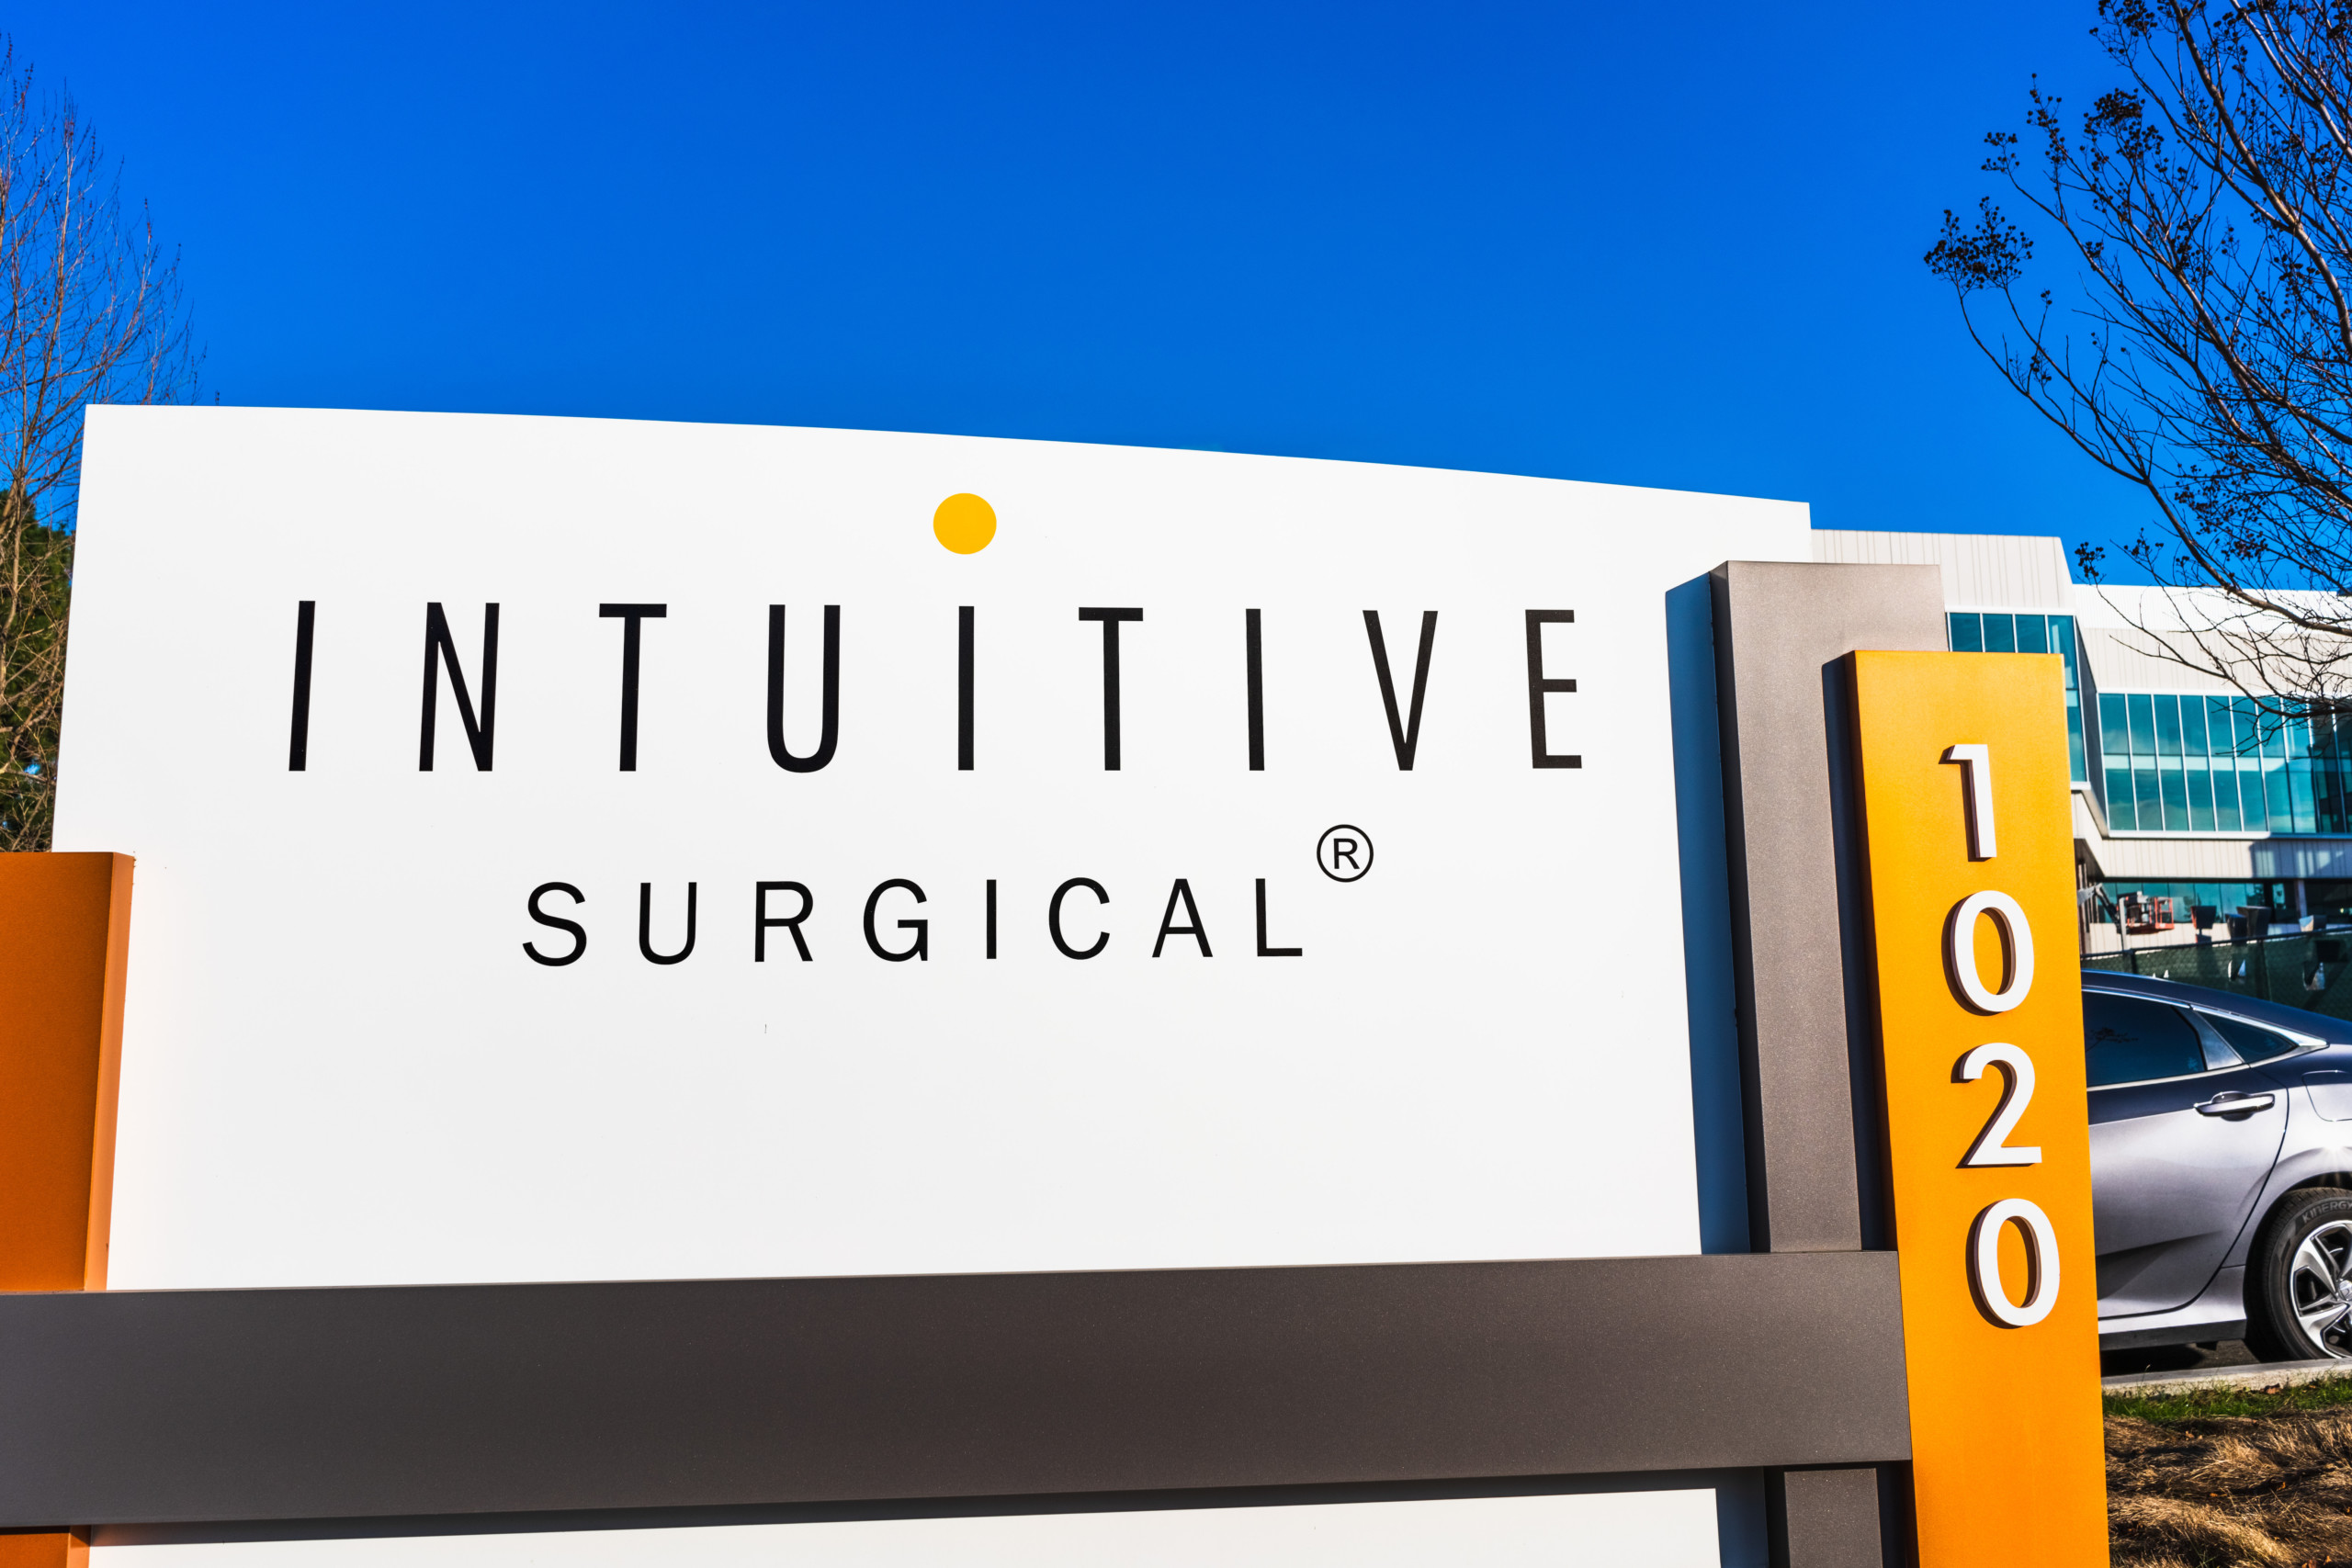 Intuitive Surgical: Keine Covid-Auswirkungen mehr spürbar, Aktie klettert nachbörslich auf neues Allzeithoch